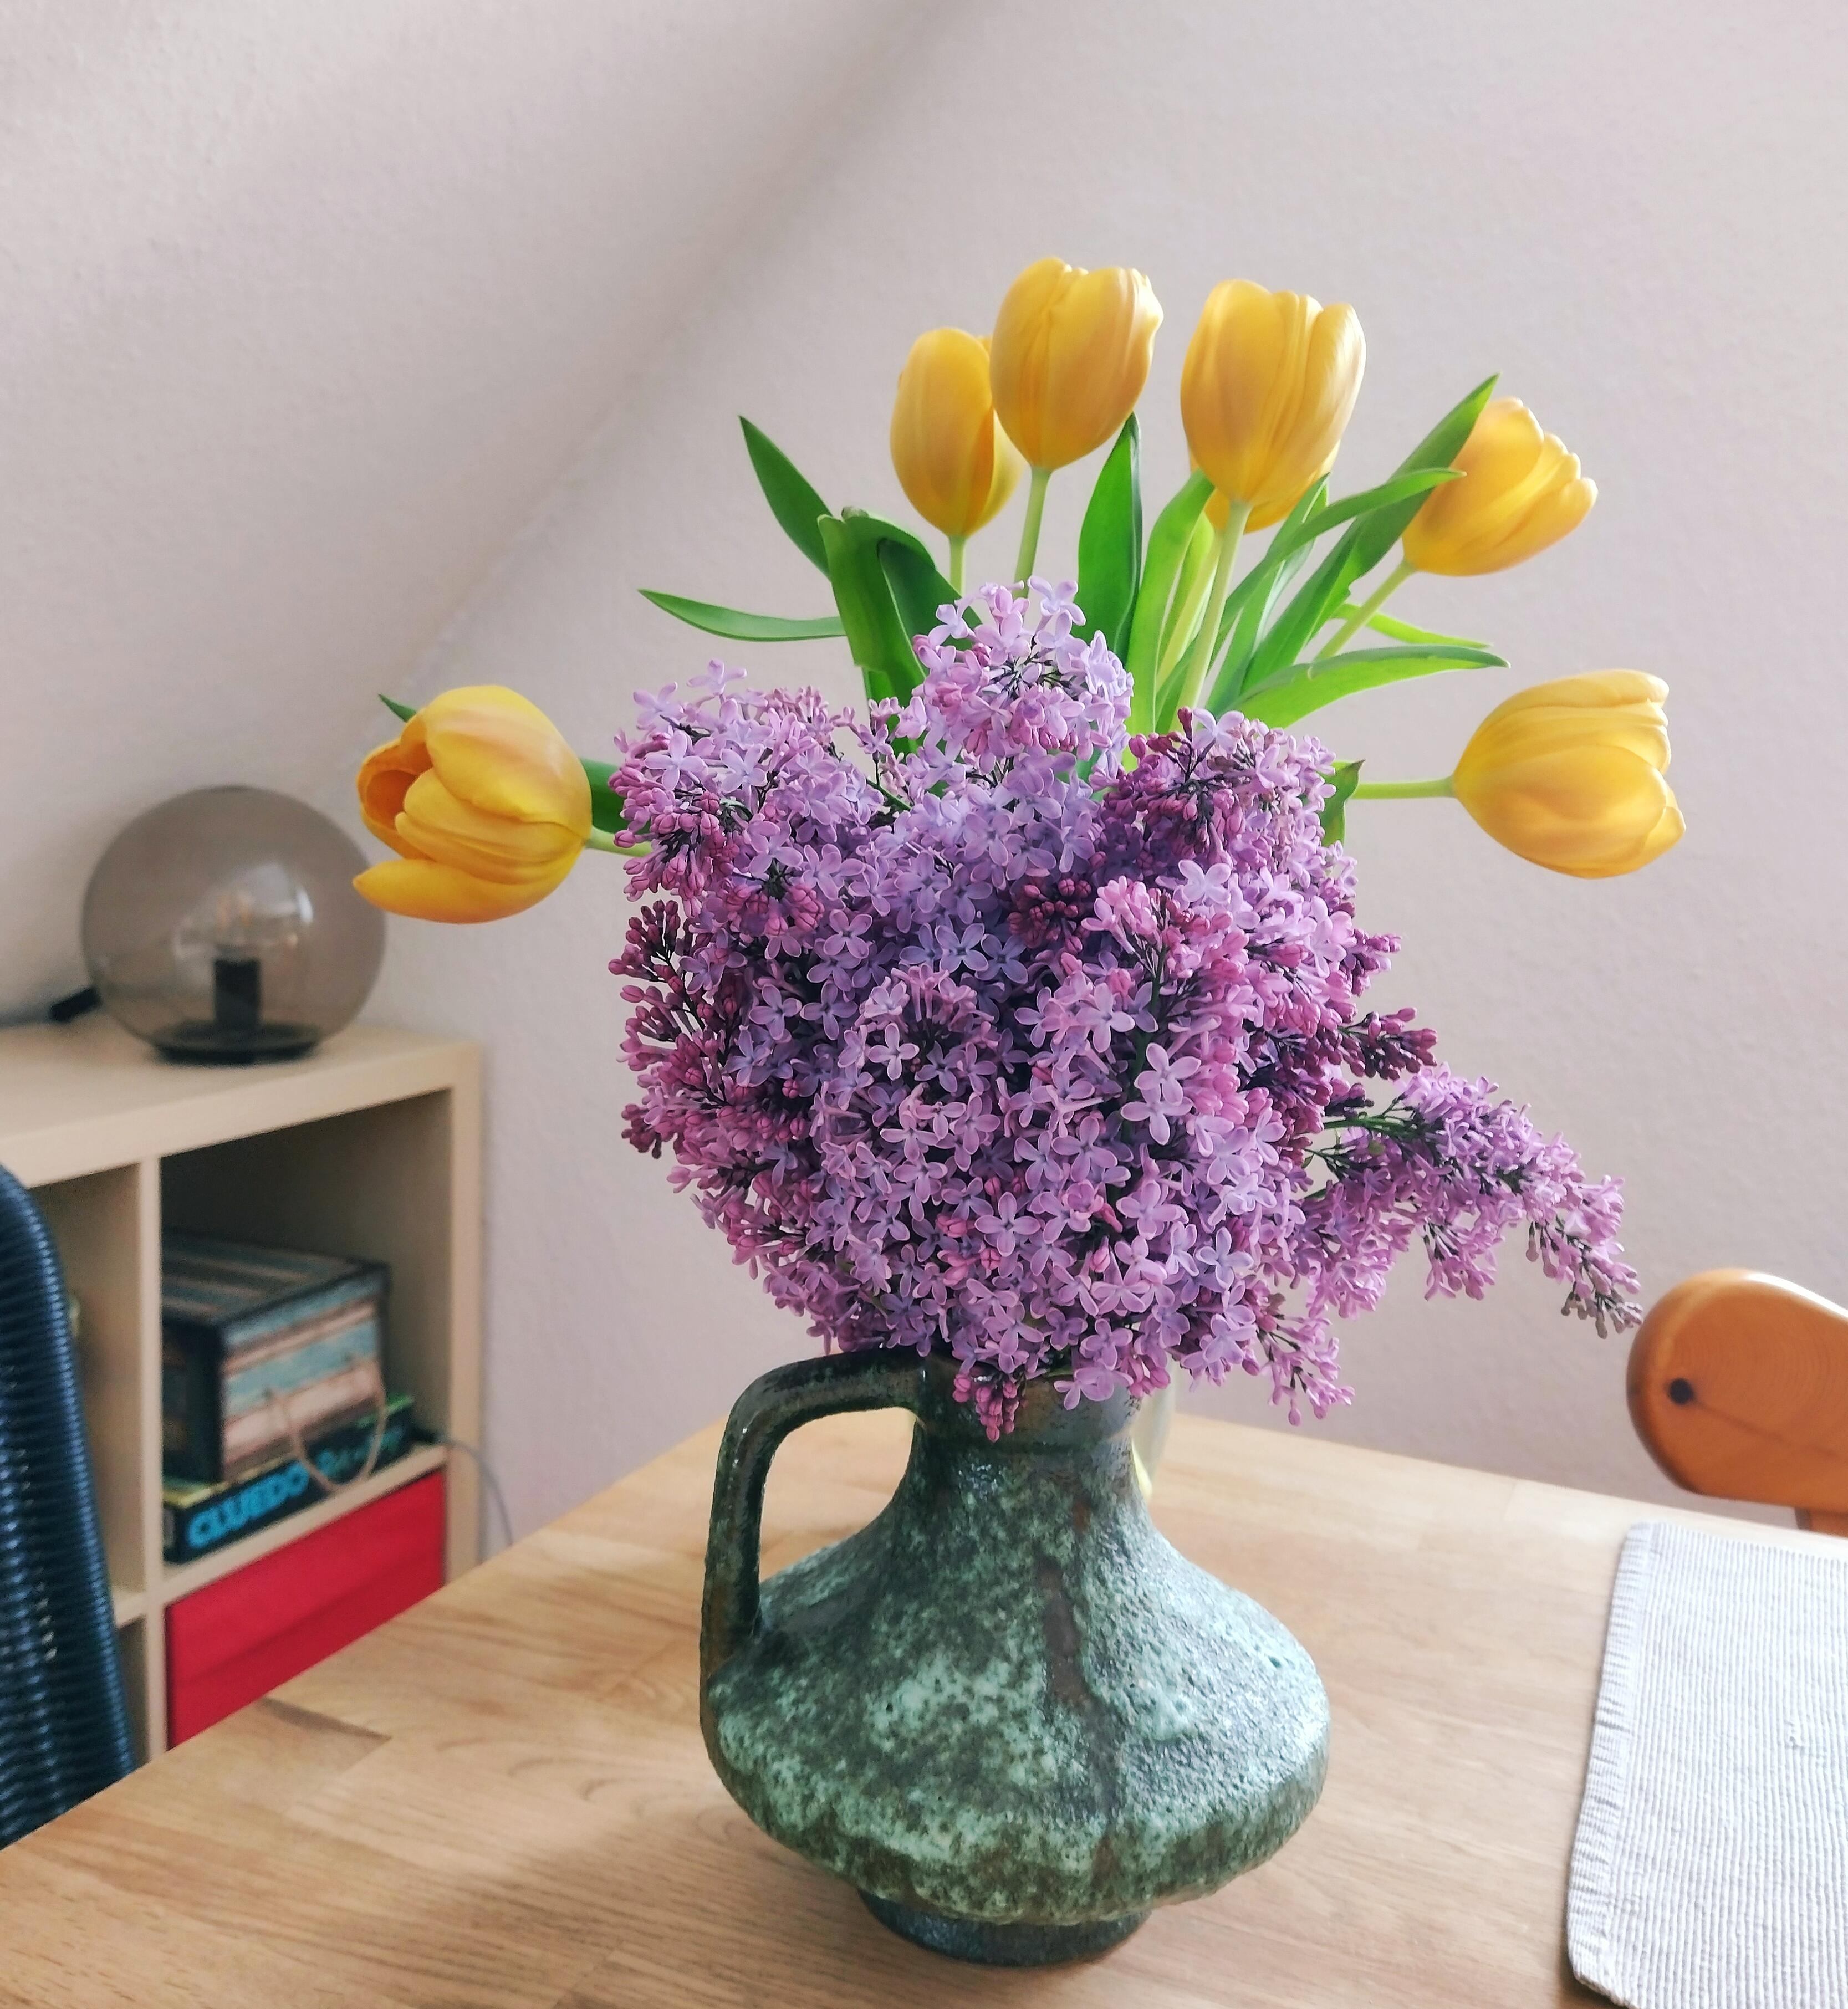 #frischeblumen #blumenliebe #tulpen #flieder #vintagevase #keramikvase